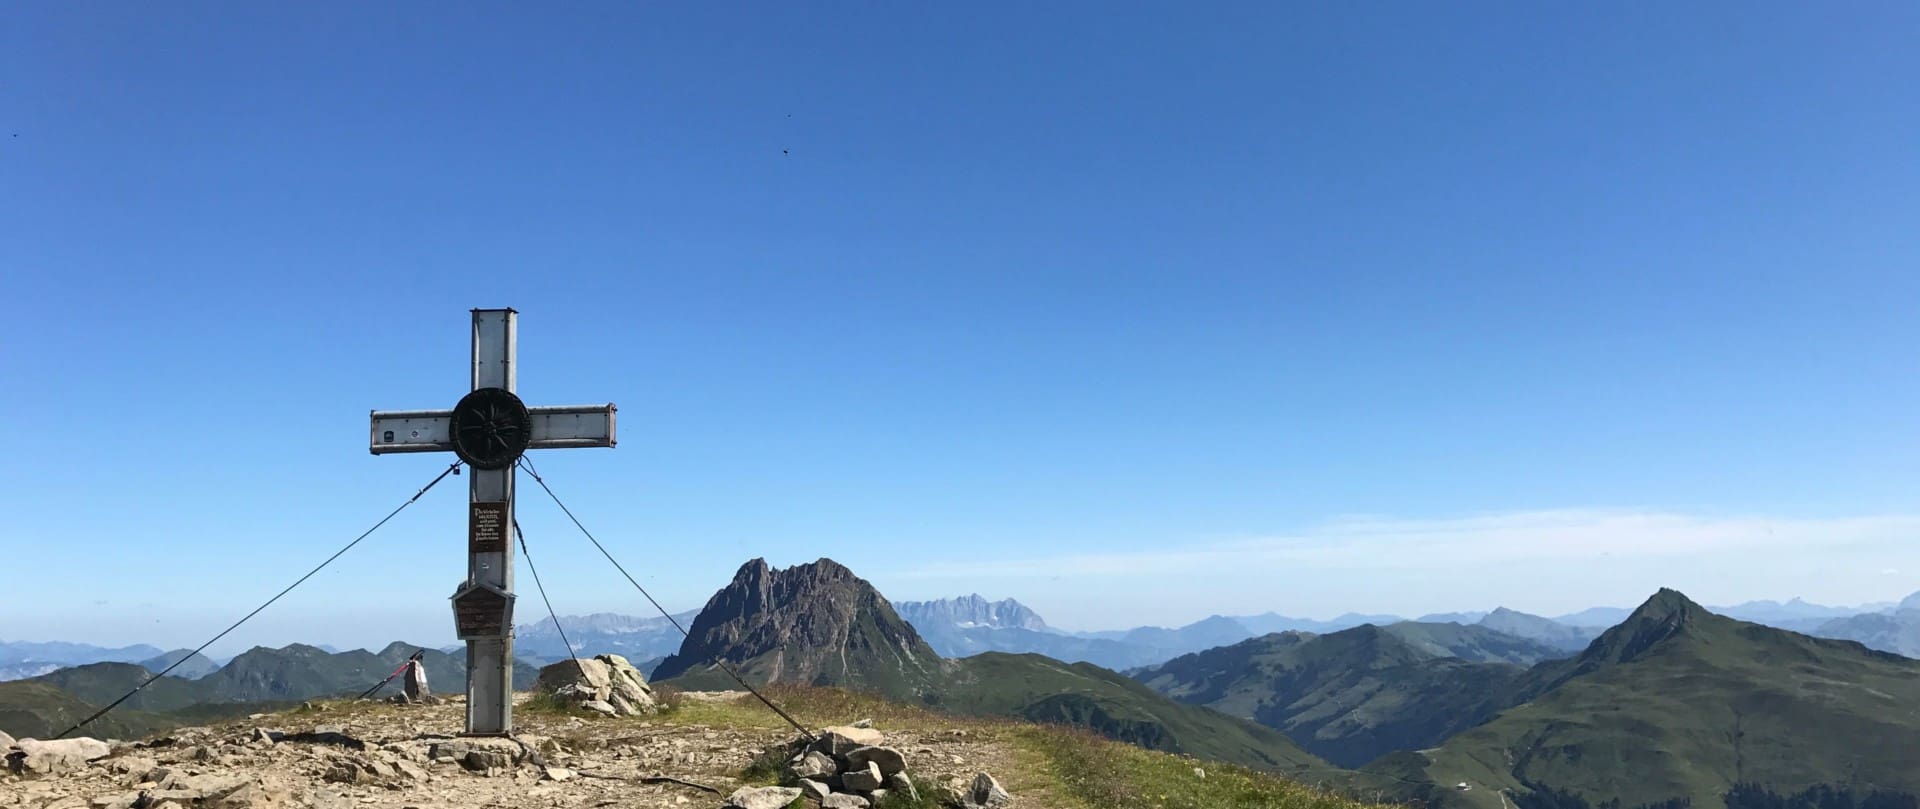 Ein robustes Gipfelkreuz auf dem Wildkogel-Panoramaweg ragt in den strahlend blauen Himmel